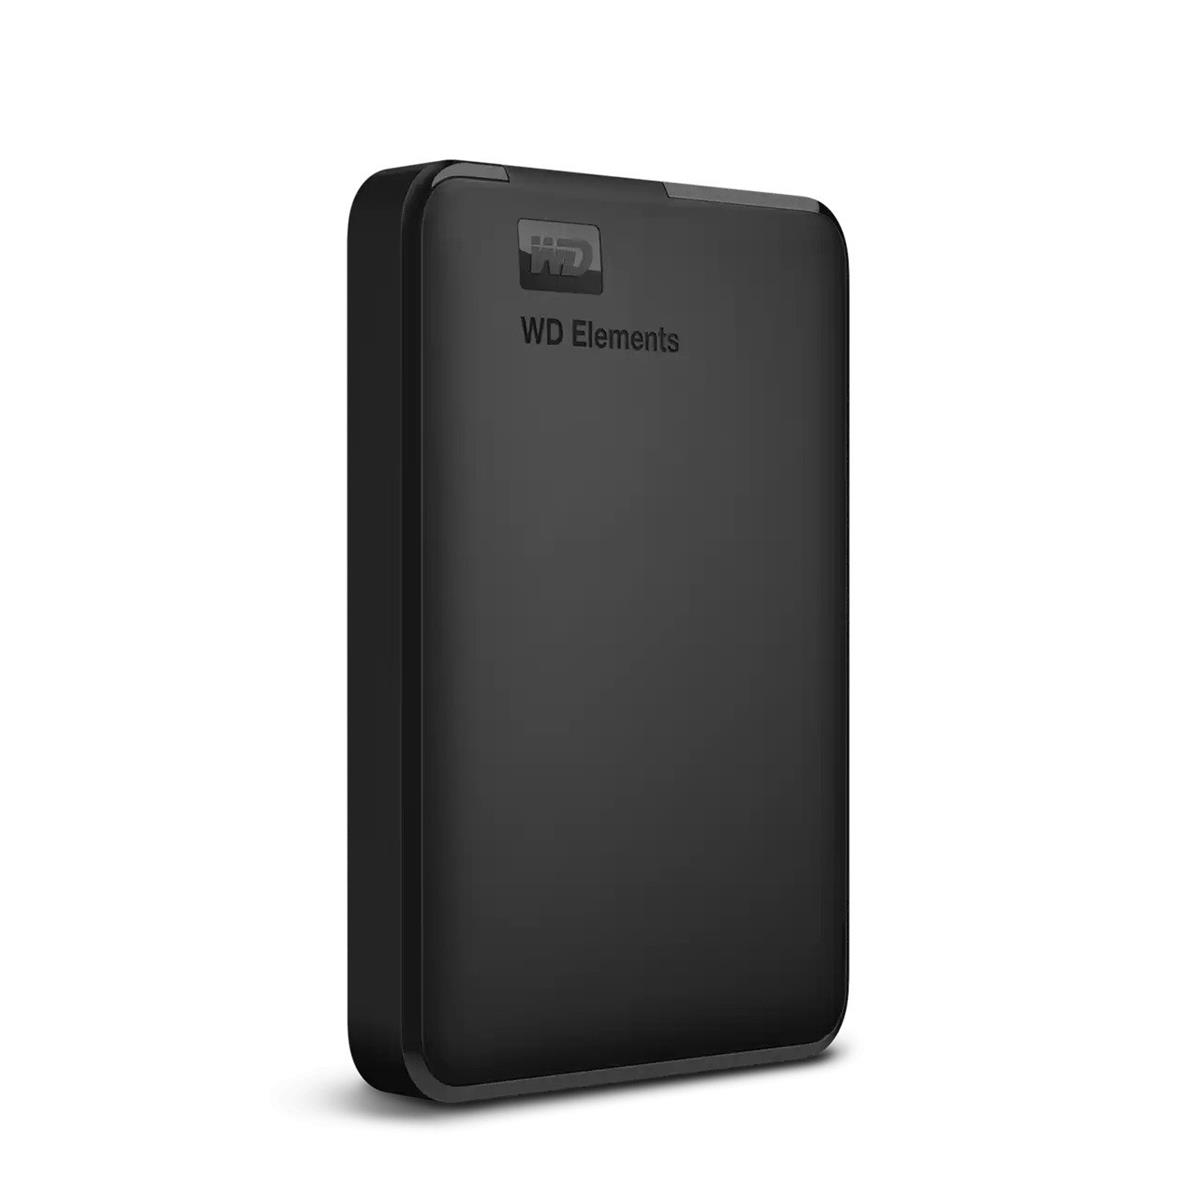 Портативный внешний жесткий диск WD Elements 2 ТБ с интерфейсом USB 3.0 #WDBU6Y0020BBK-WESN